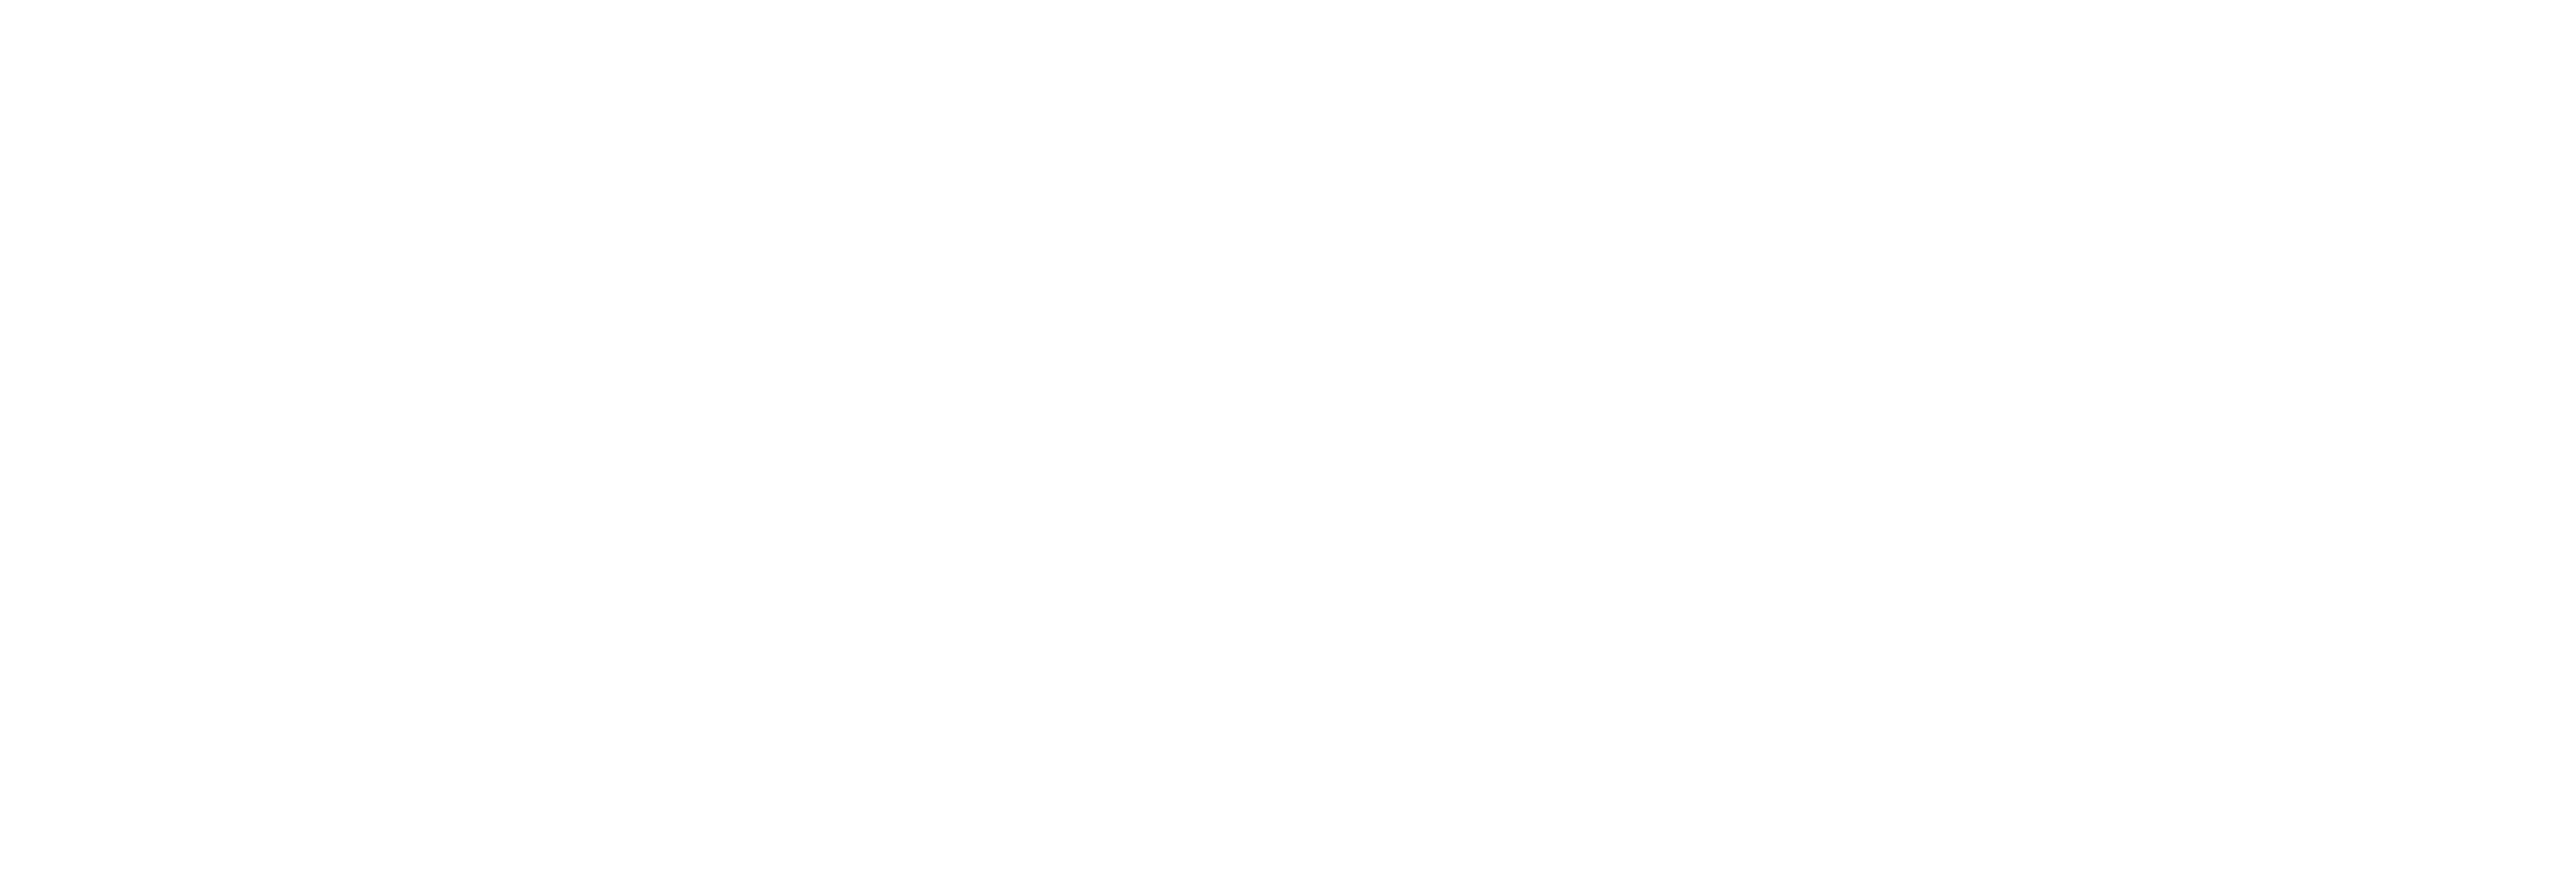 AniCura Lleida Centre Veterinari logo